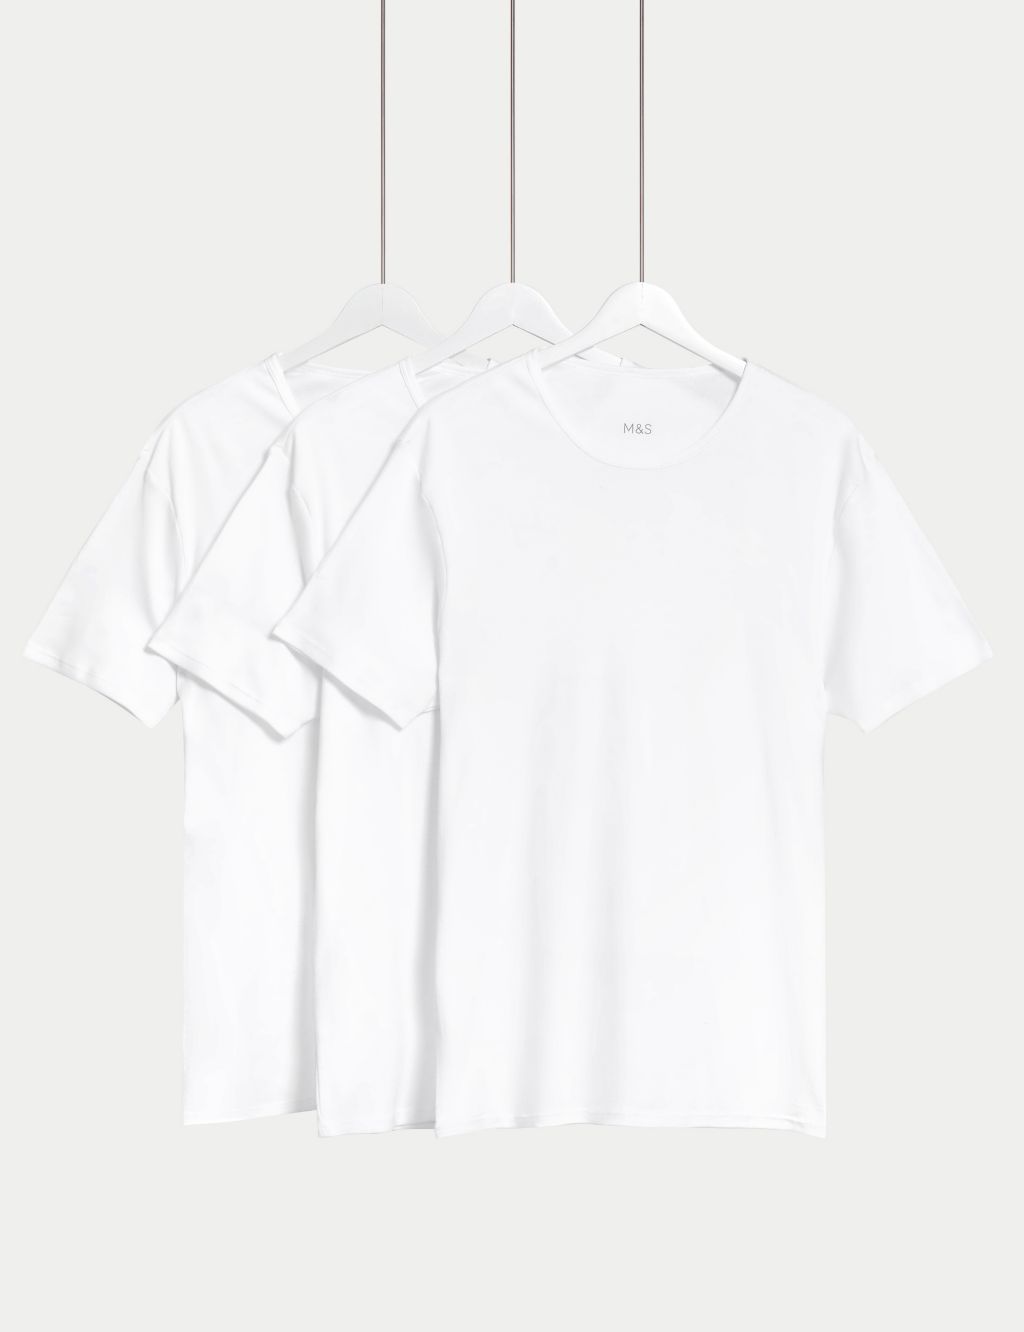 3pk Essential Cotton T-Shirt Vests